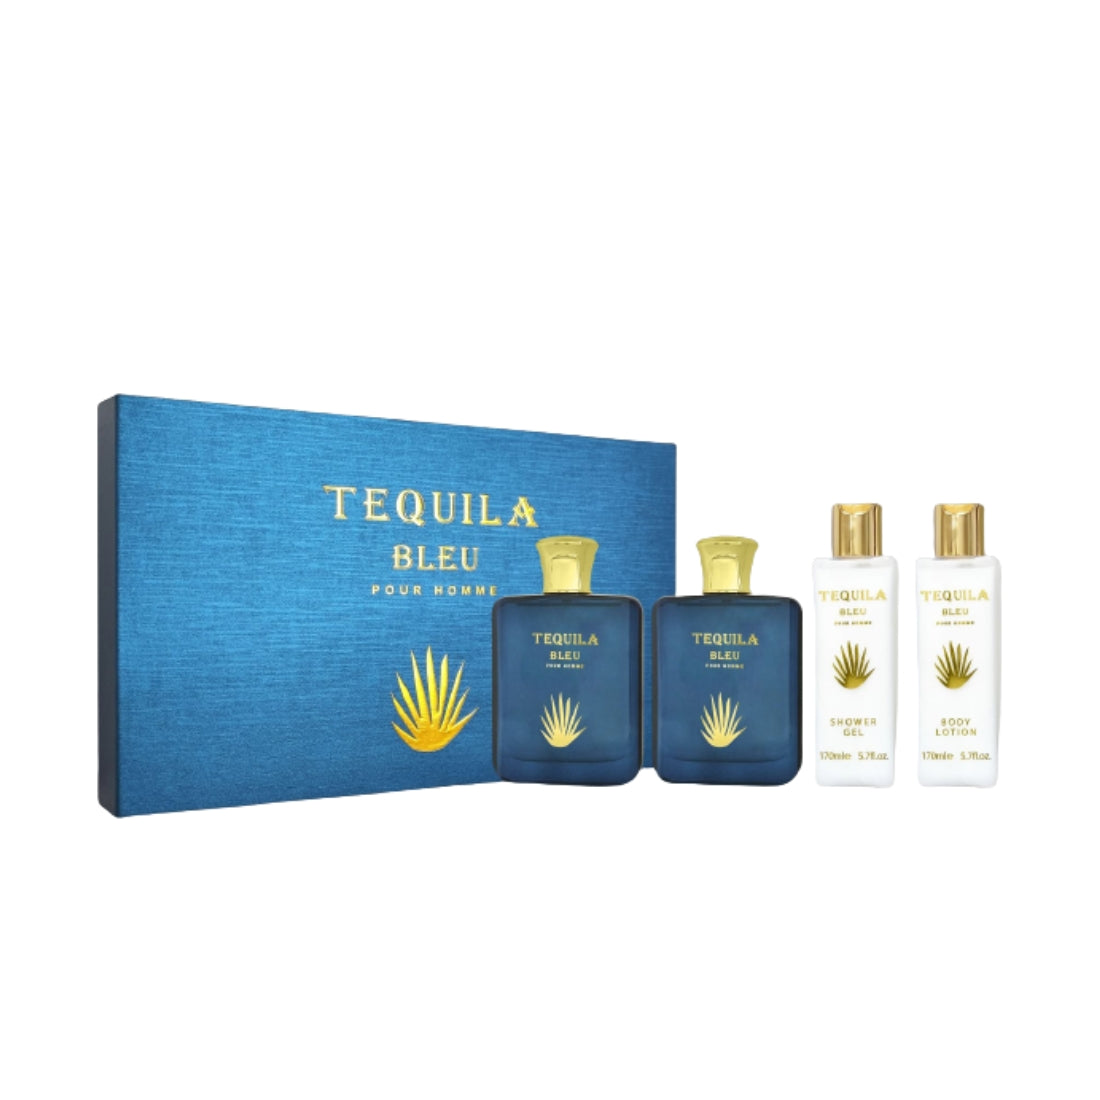 Tequila Bleu Pour Homme for Men By Tequila Eau de Parfum Spray Gift Se –  Perfume Plus Outlet